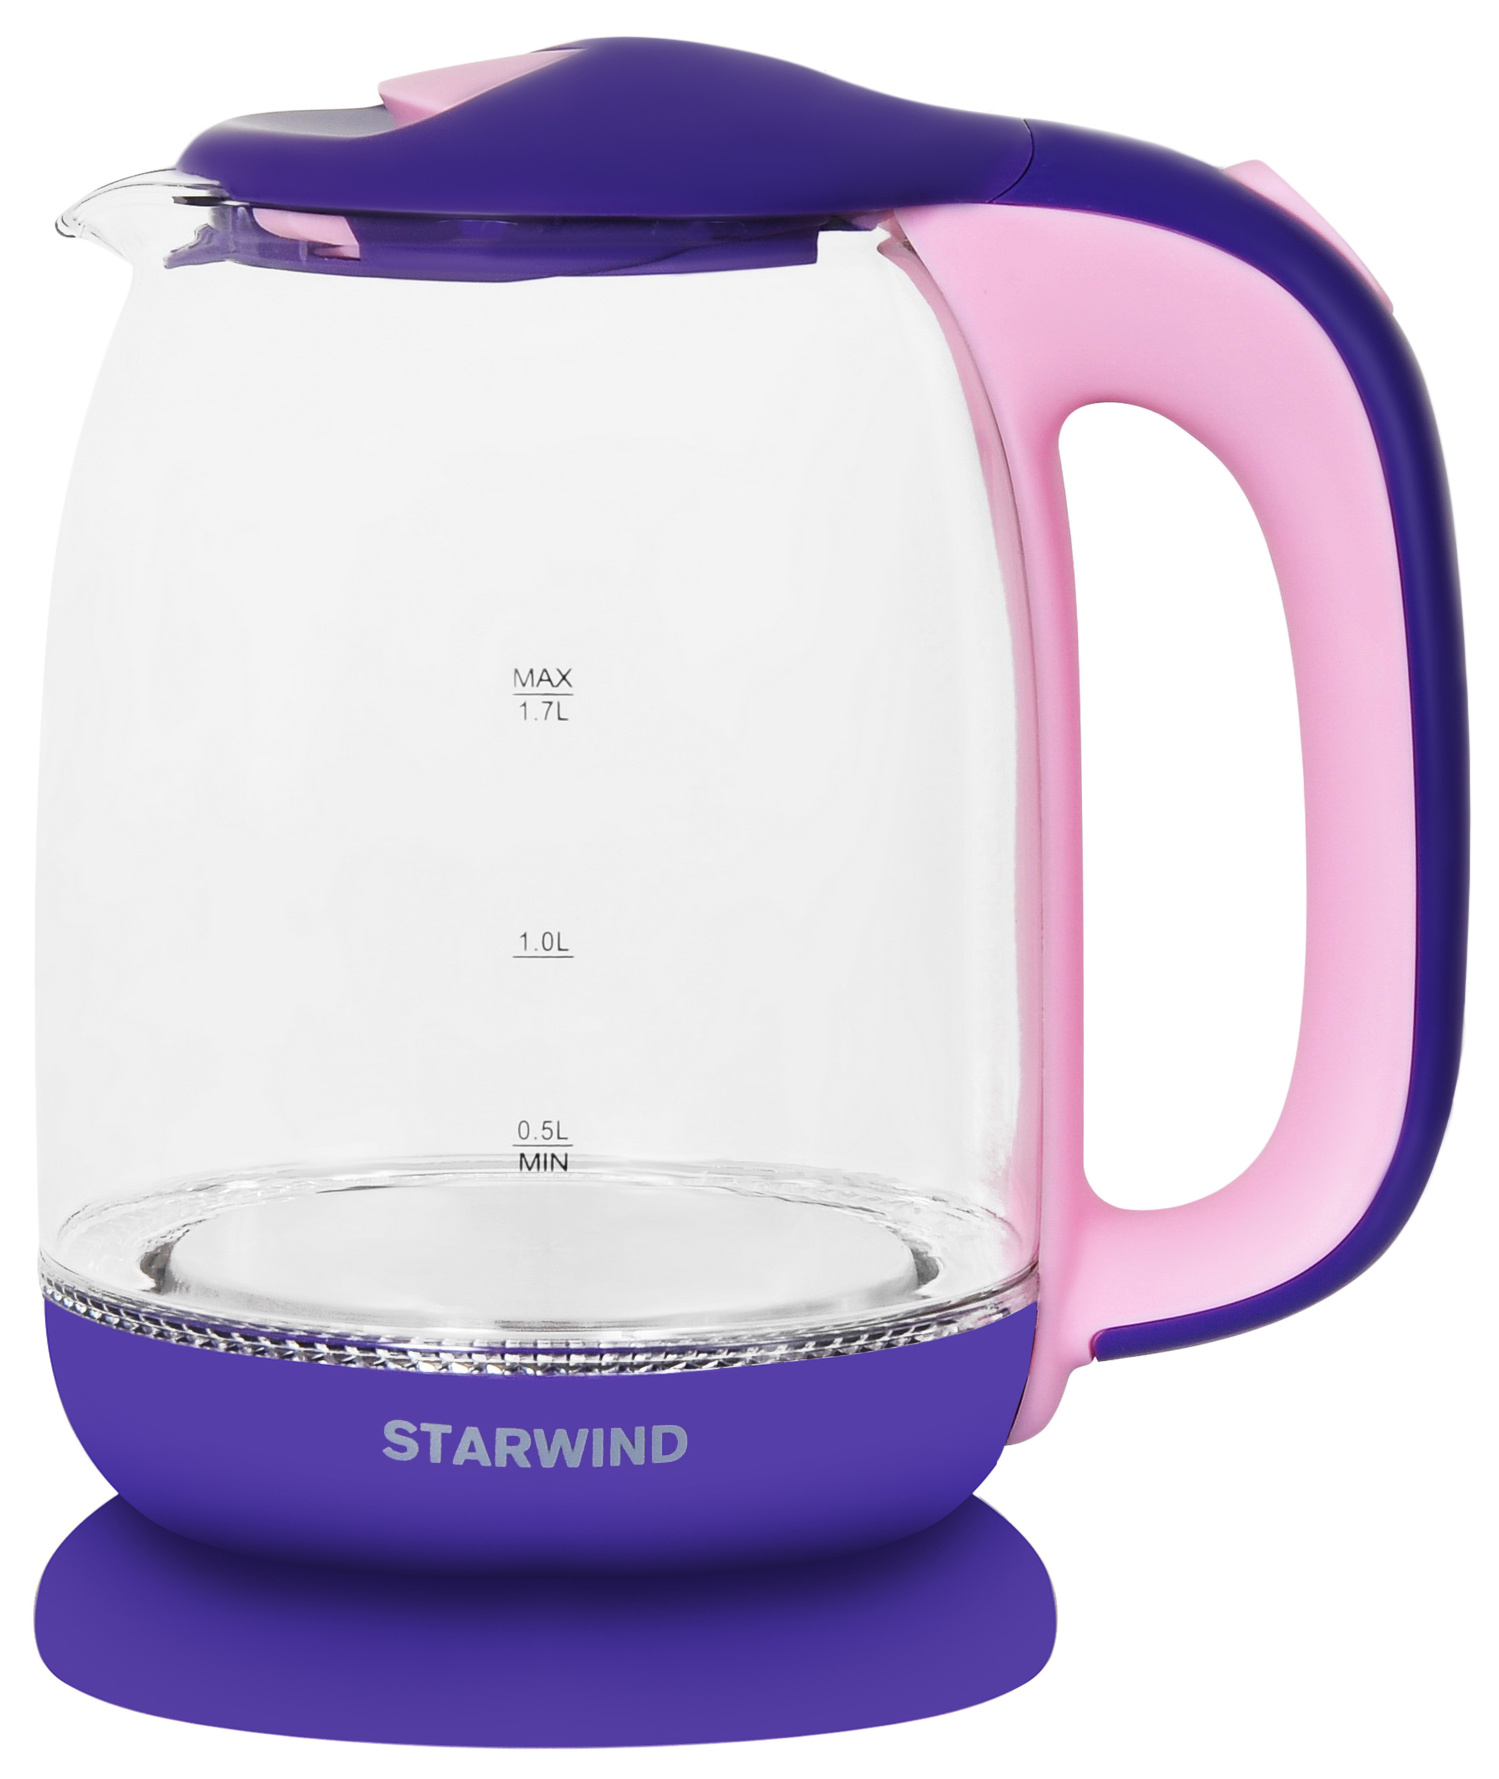 Чайник электрический STARWIND SKG1513 1.7 л фиолетовый, розовый, прозрачный штора для ванной wess bonsoir 180x200 см полиэстер фиолетовый розовый